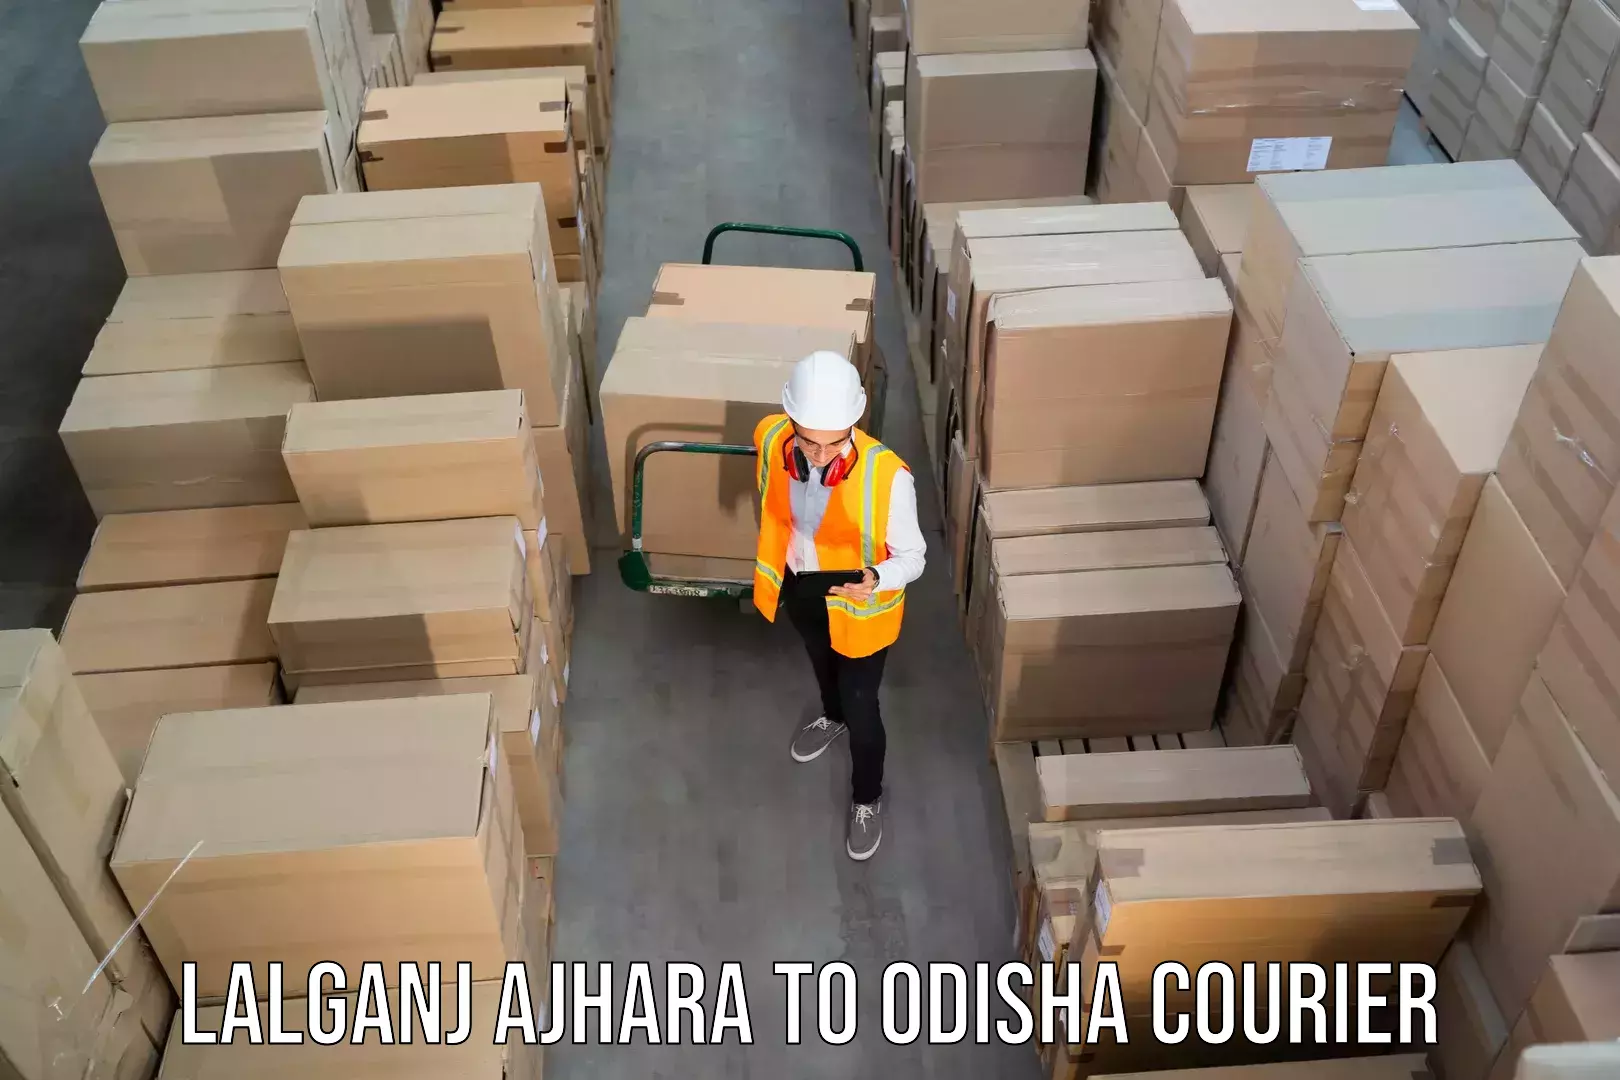 Express delivery capabilities Lalganj Ajhara to Odisha